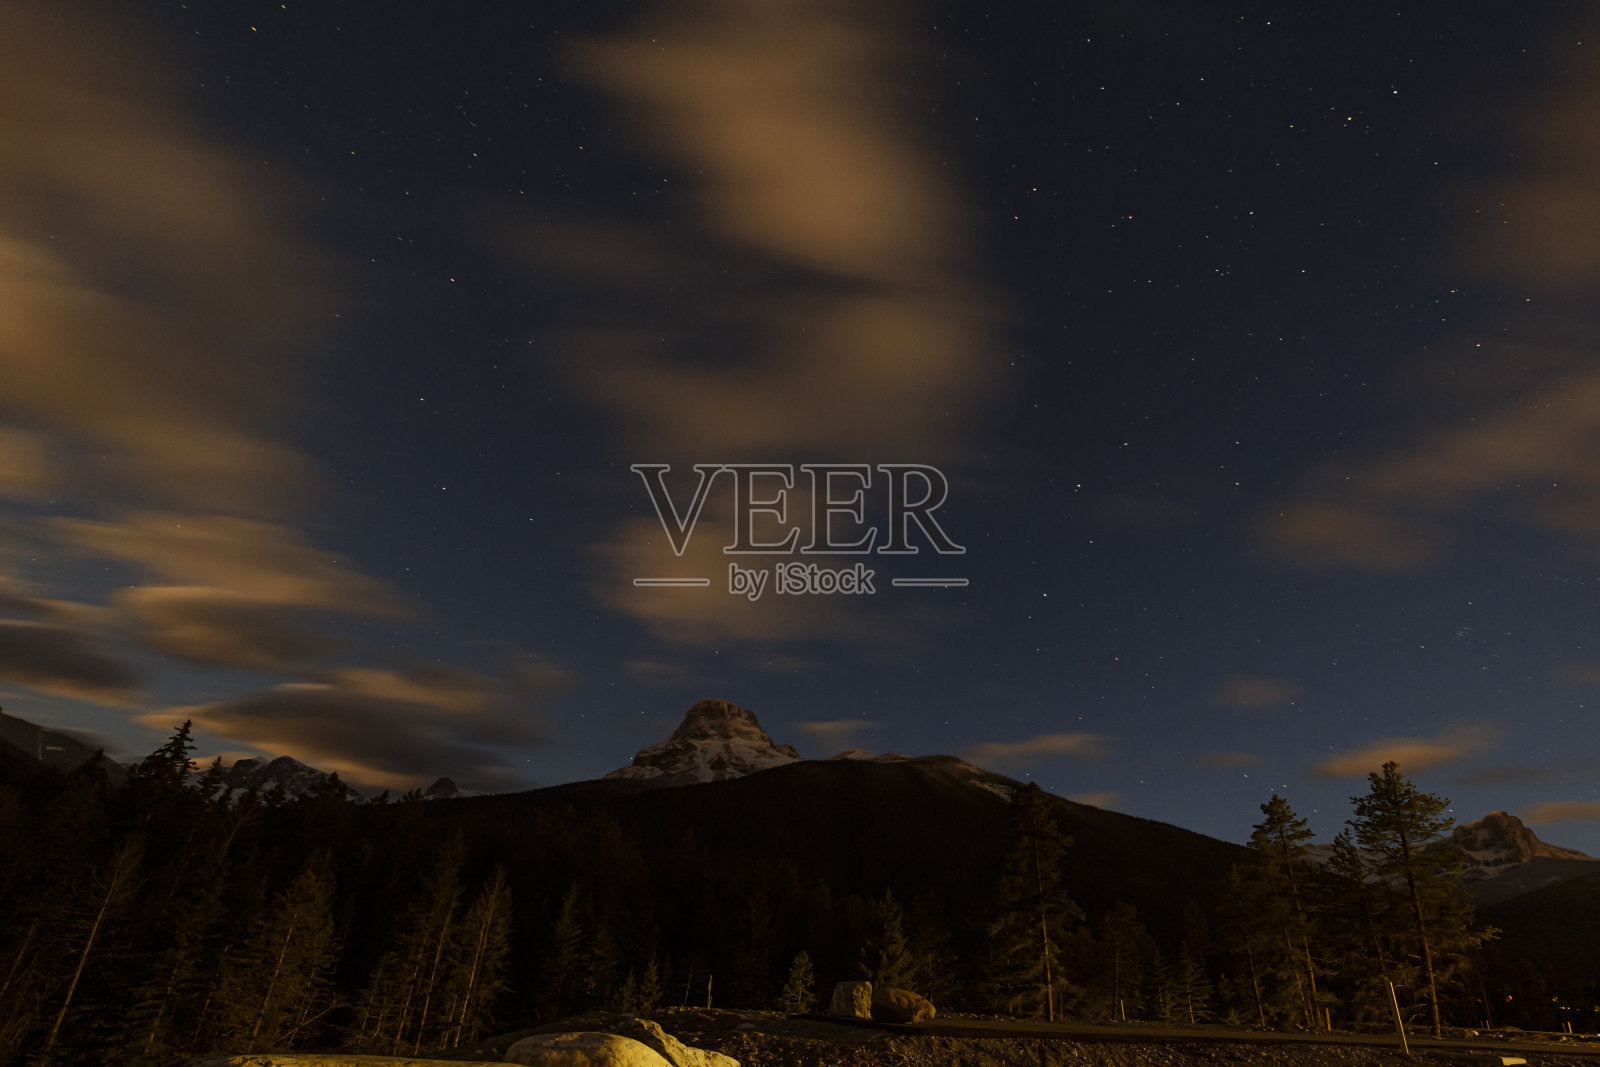 黑暗的山。背景是有星星和云彩的夜空。春溪,加拿大照片摄影图片